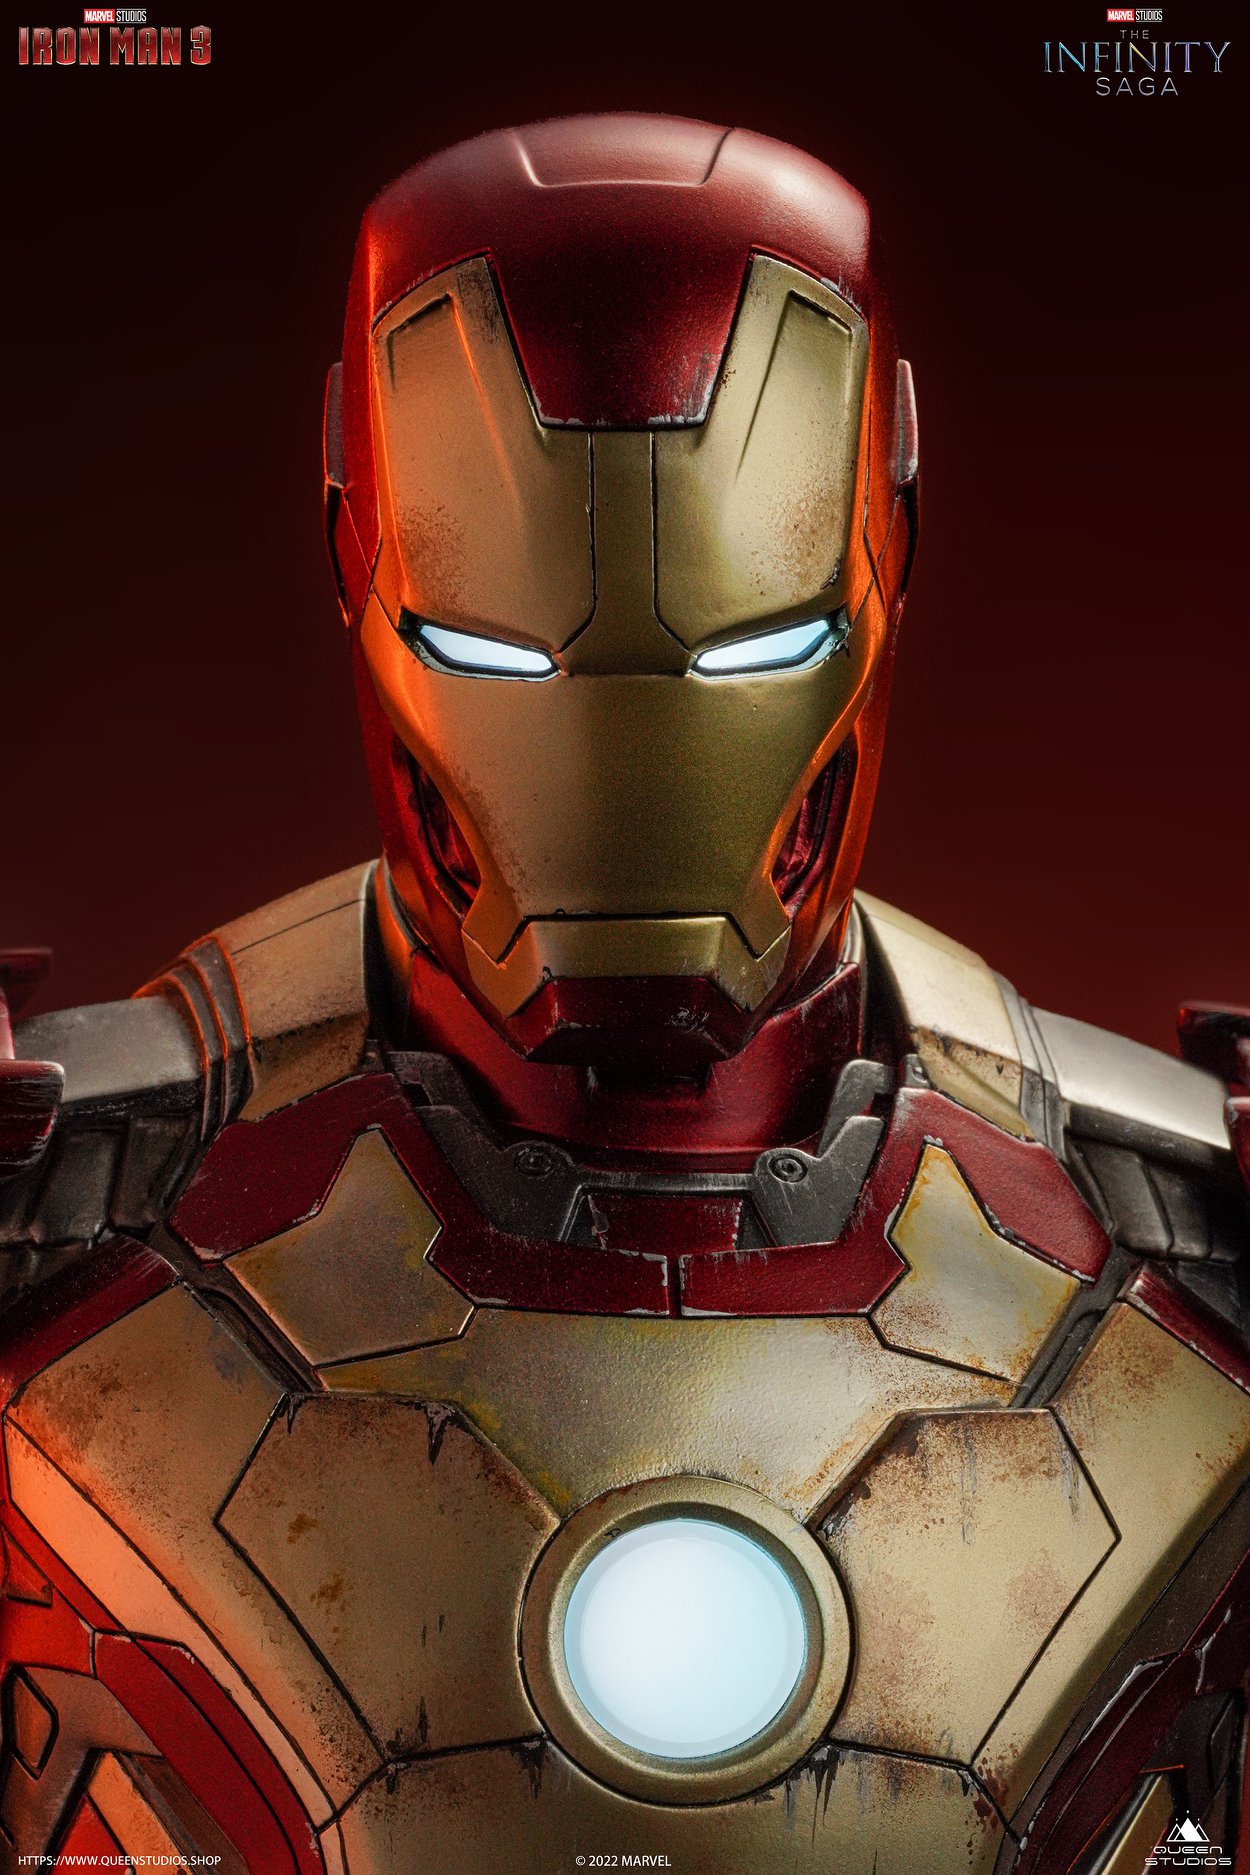 [PREORDER] Queen Studios 1/4 Iron Man Mark 42